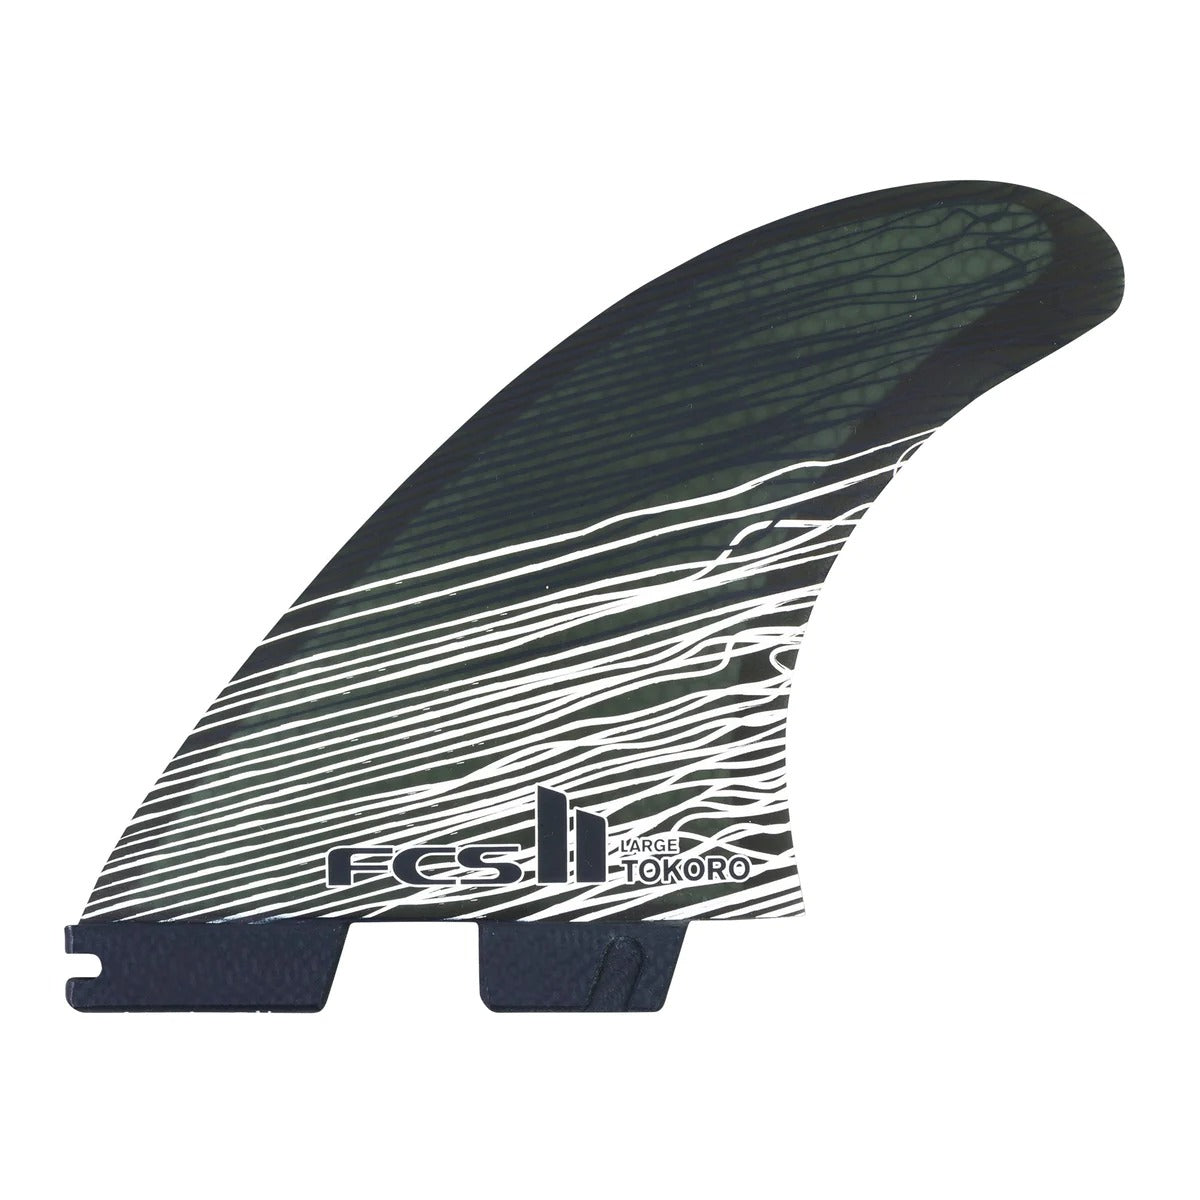 FCS2 フィン ショートボード用 トライフィン TOKORO PC ウェイドトコロ パフォーマンスコア サイズL – WCS SURF